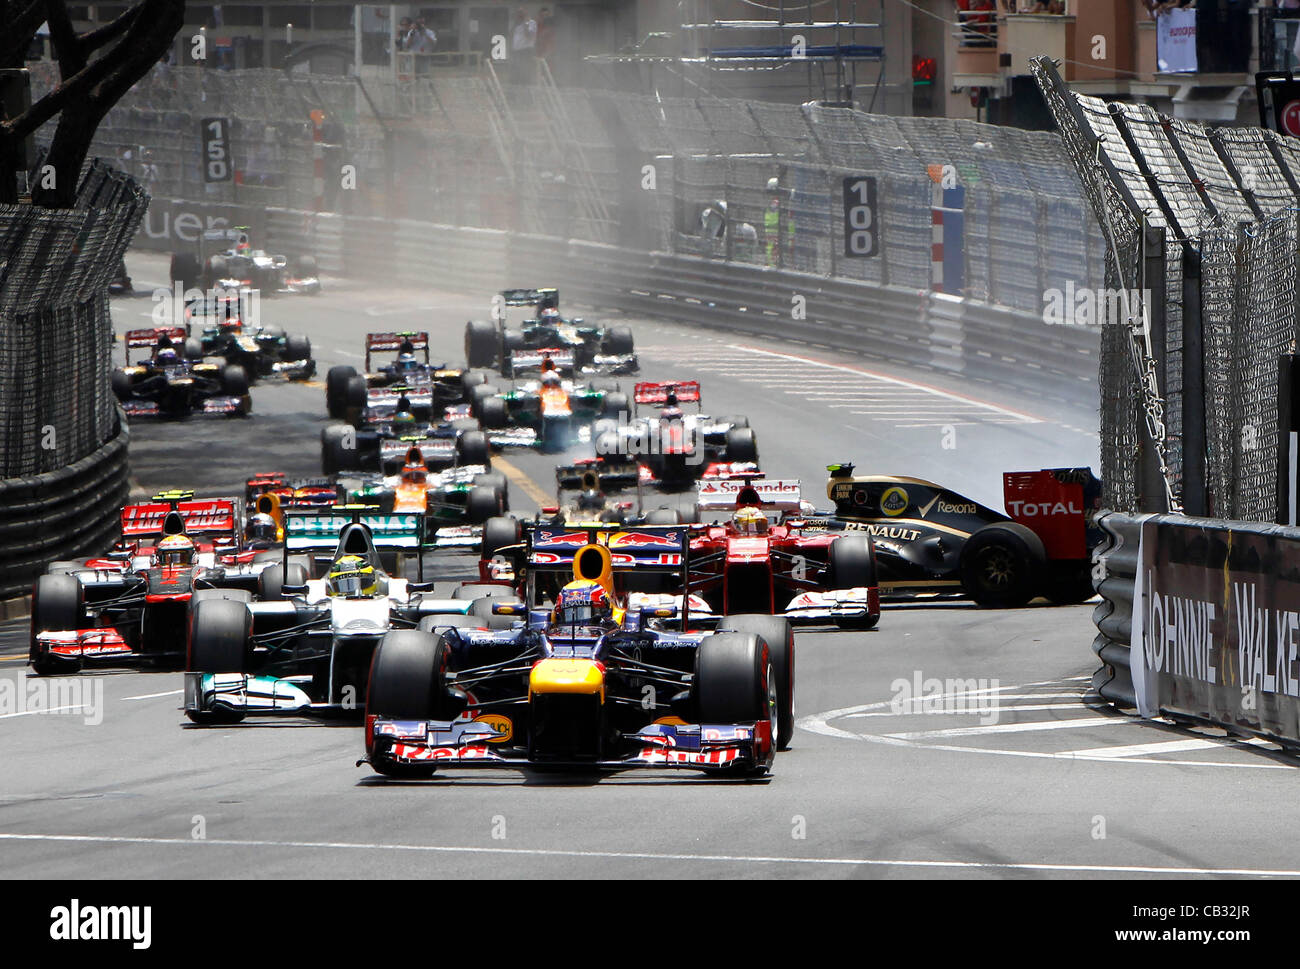 27.05.2012. Monaco Monte Carlo, F1 Grand Prix Motorsports: FIA